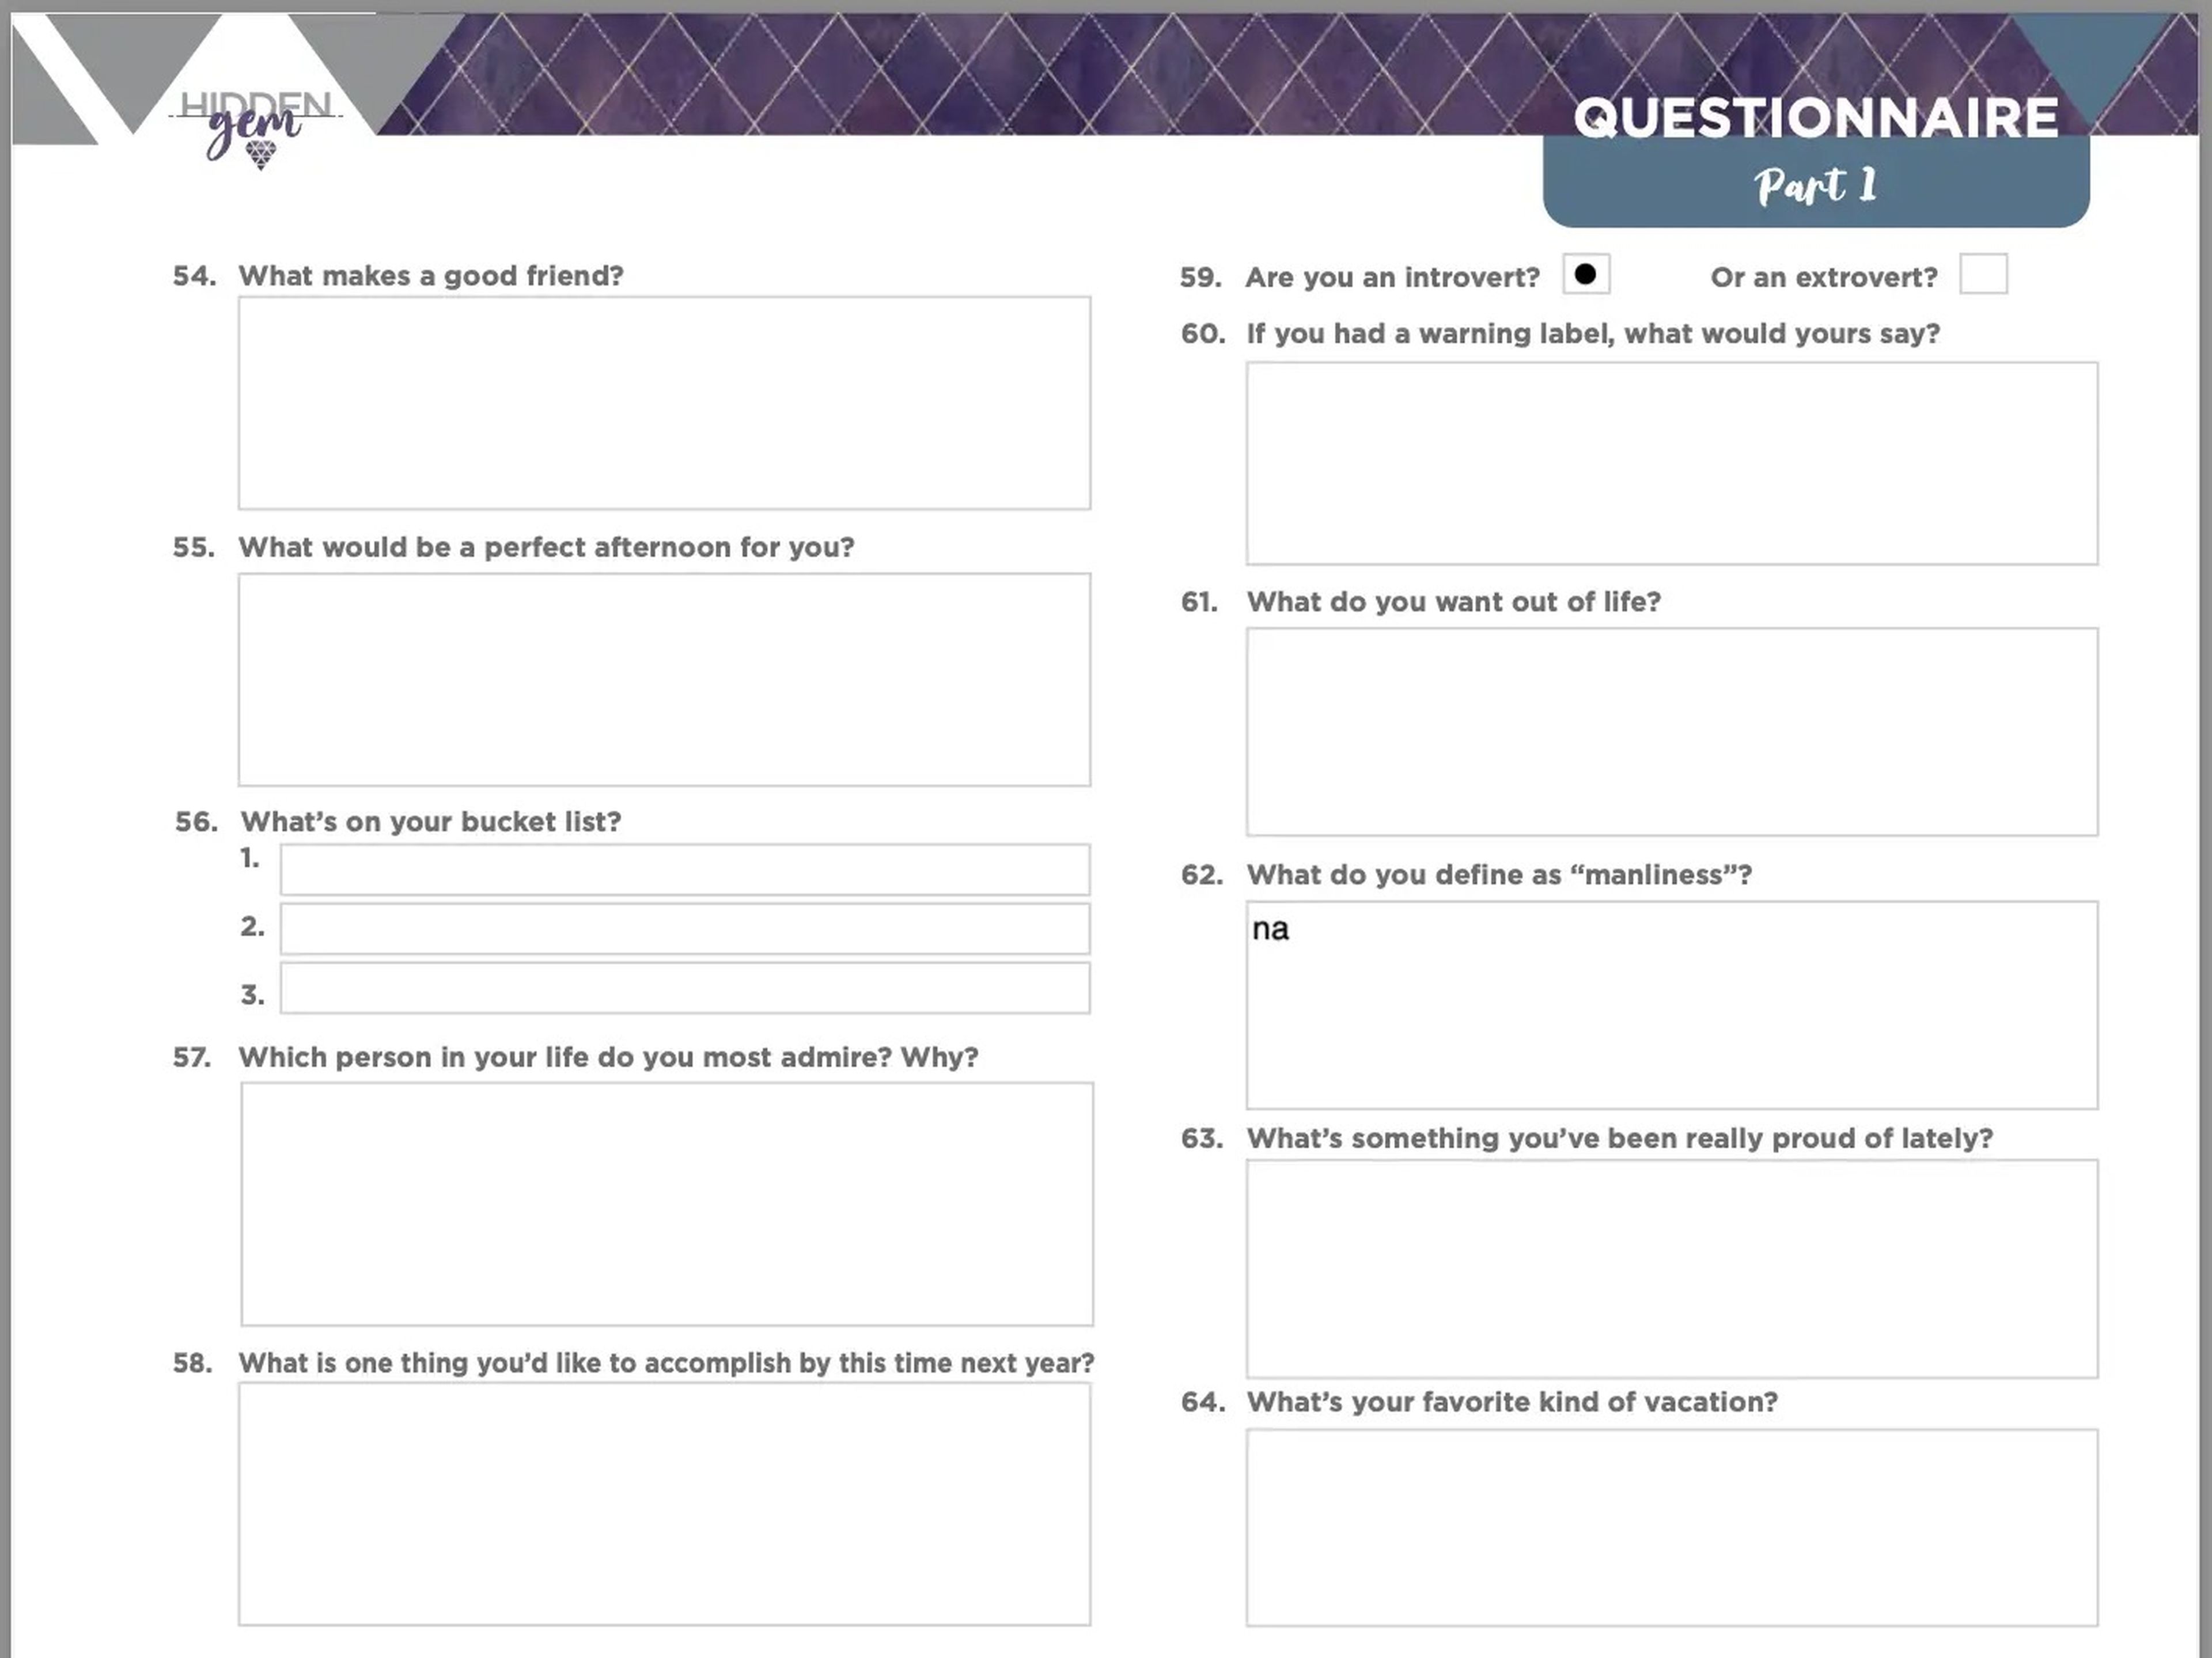 Cuestionario que Lydia Kociuba envía a sus clientes para empezar a redactar sus perfiles en las aplicaciones de citas.